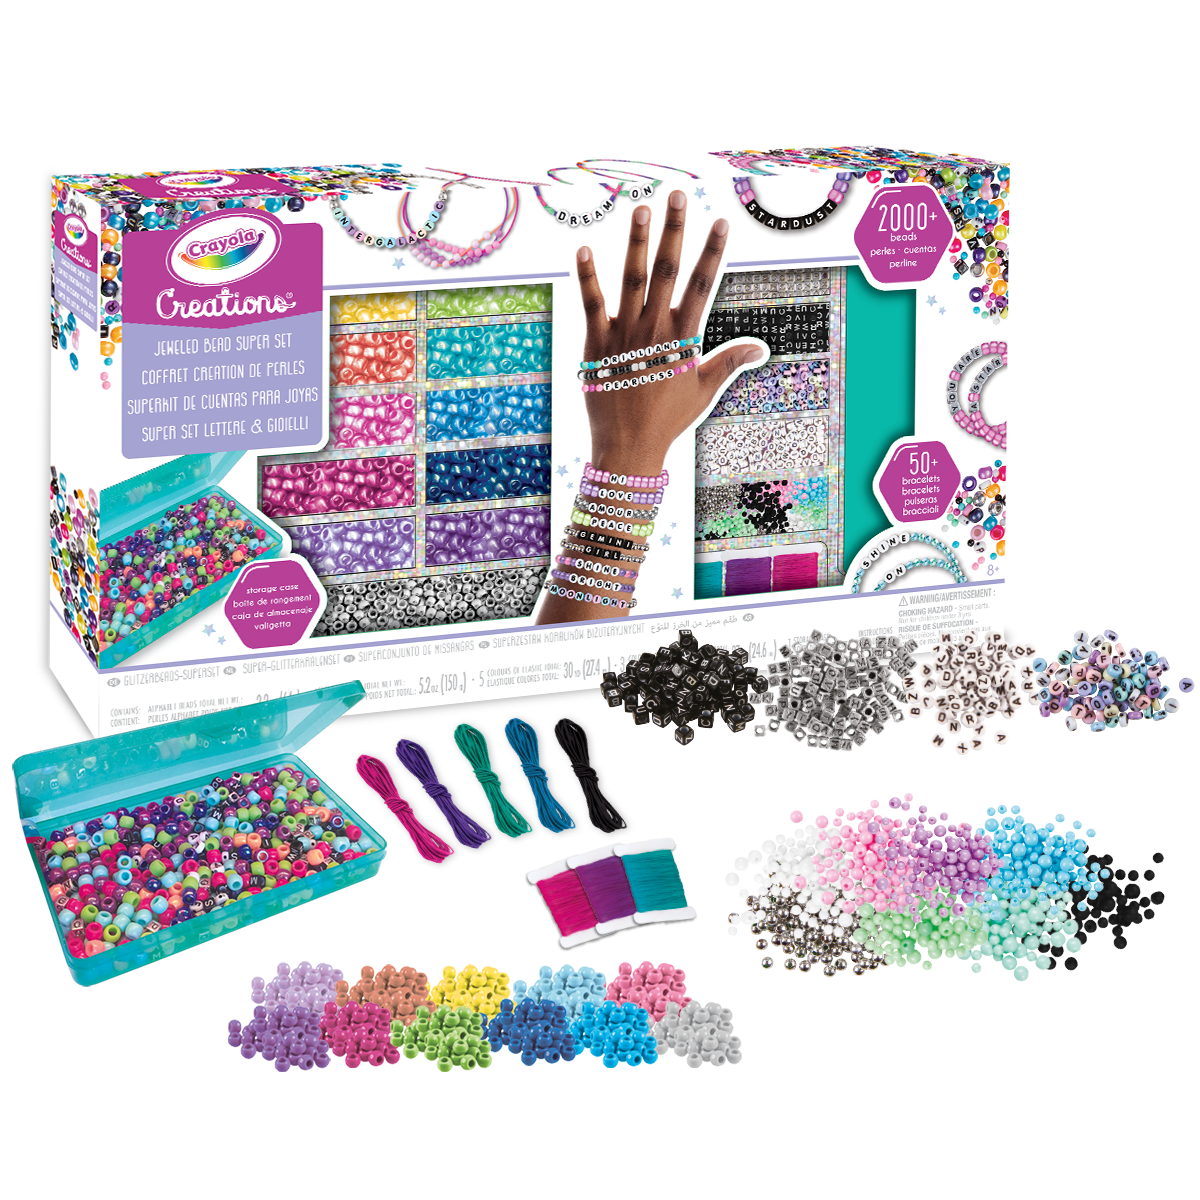 Crayola creations - super set lettere e gioielli - più di 2000 perline e 50 braccialetti - CRAYOLA